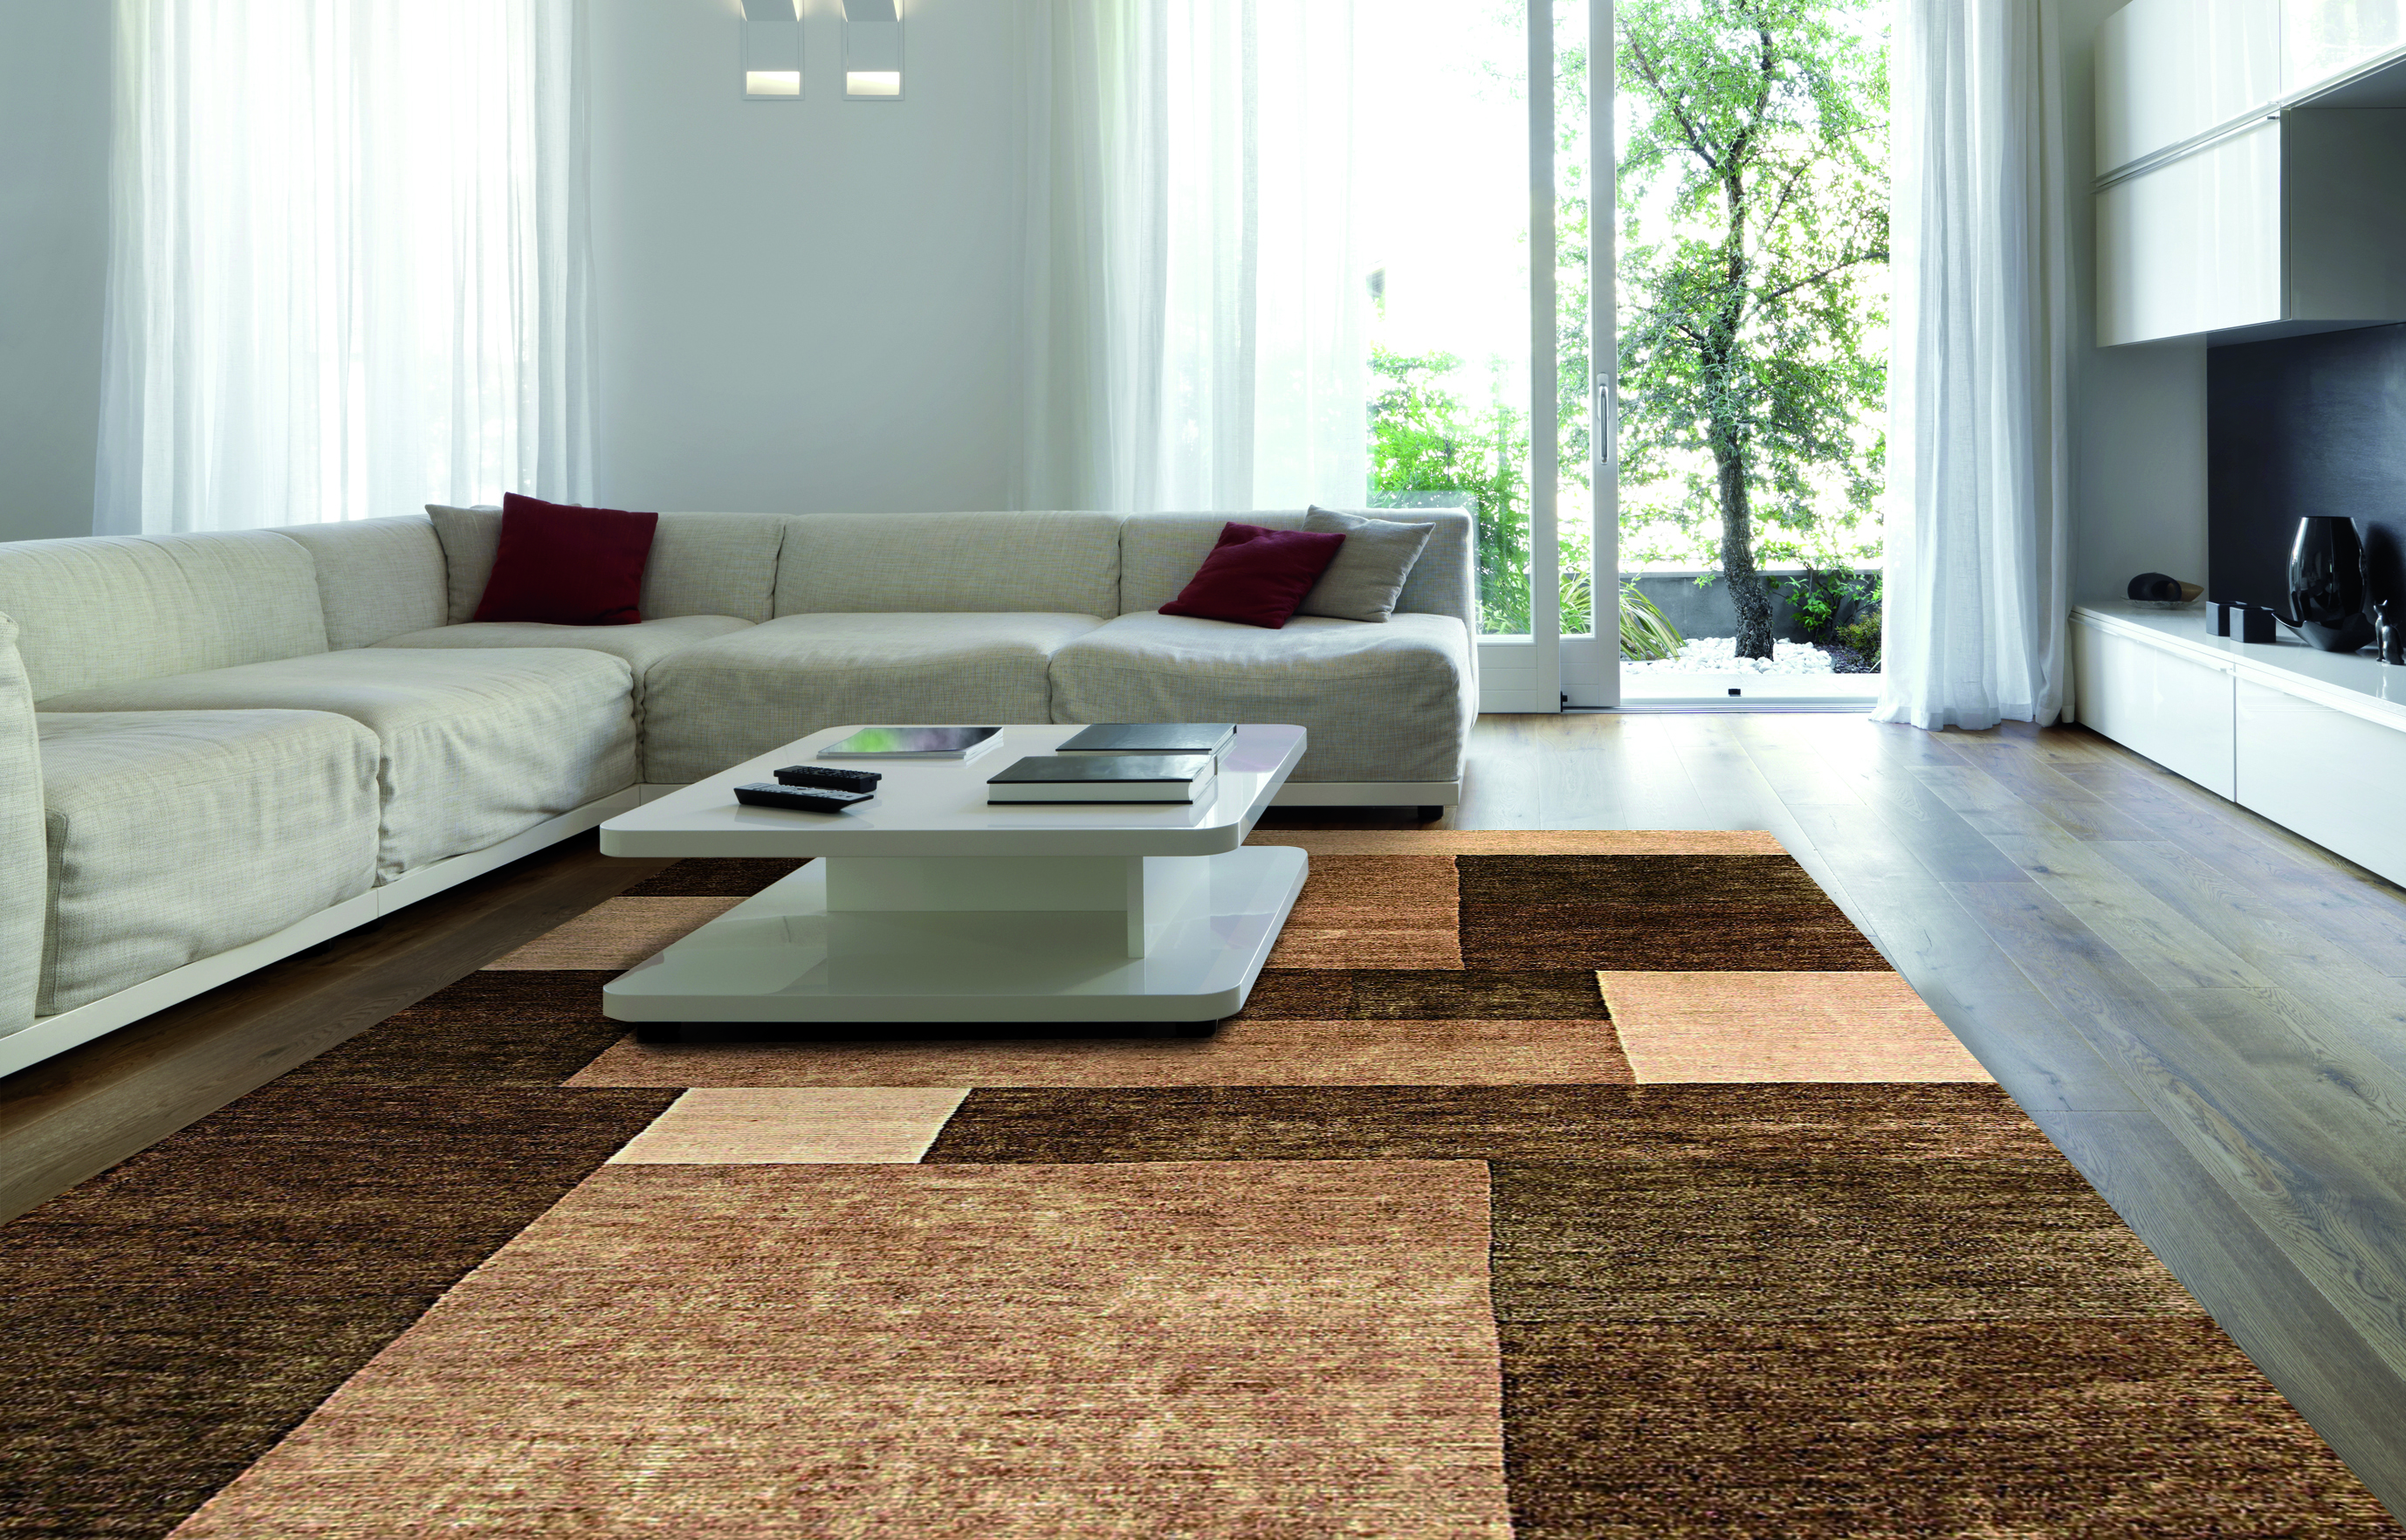 Awesome Carpet Ideas For Contemporary Living Room carpet for living room